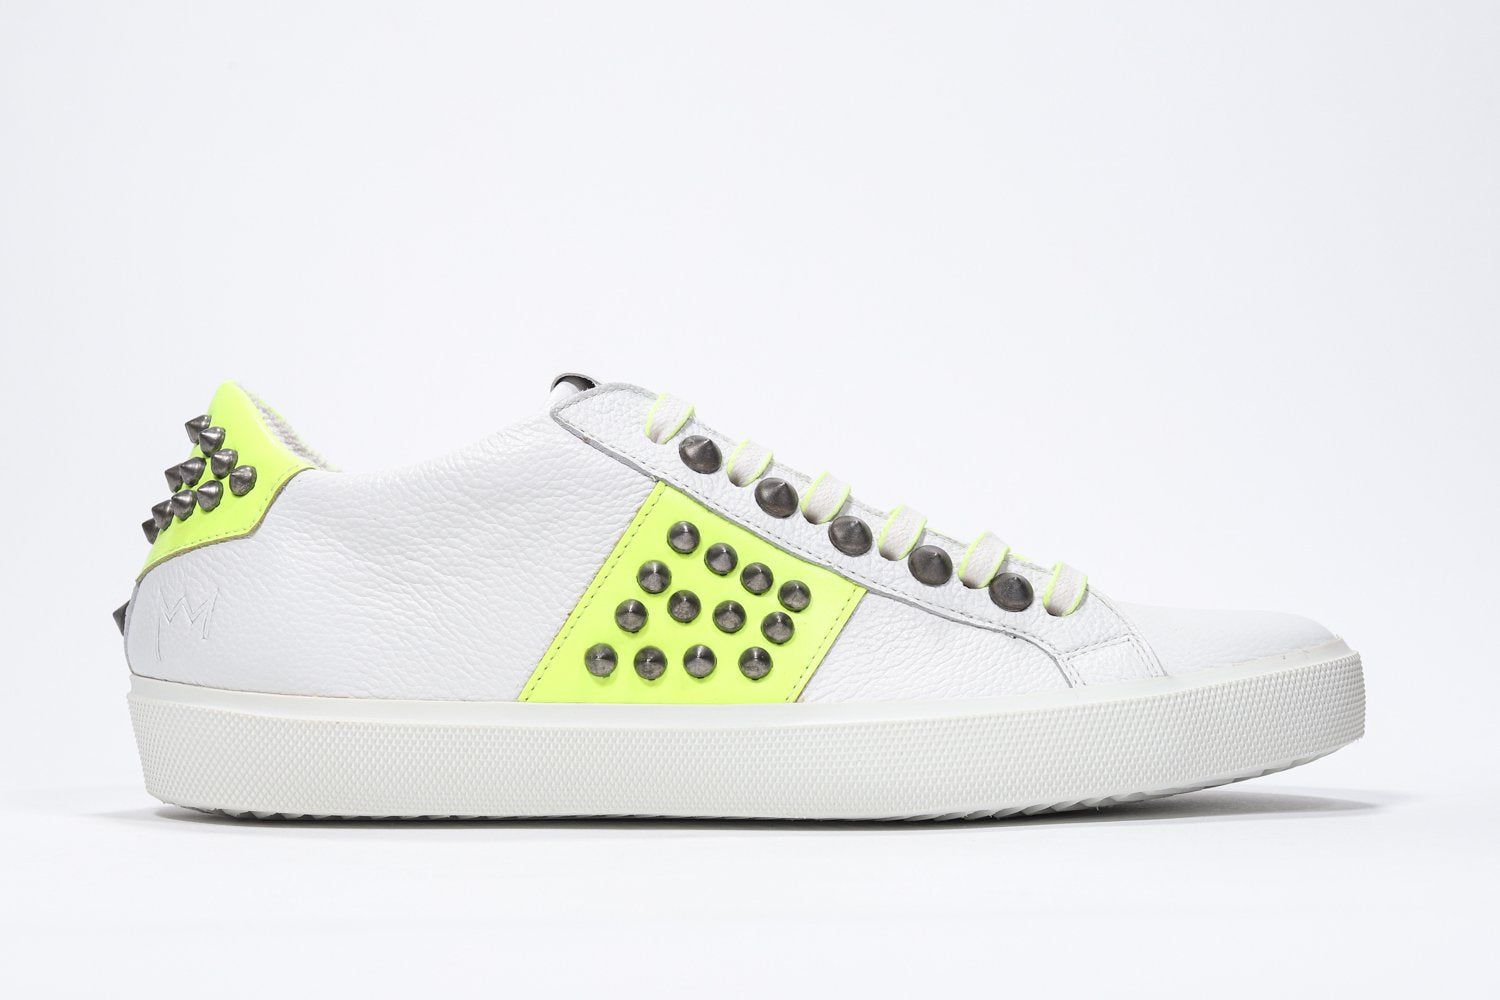 Profil latéral d'un bas blanc et jaune néon sneaker. Tige en cuir avec clous et semelle en caoutchouc blanc.